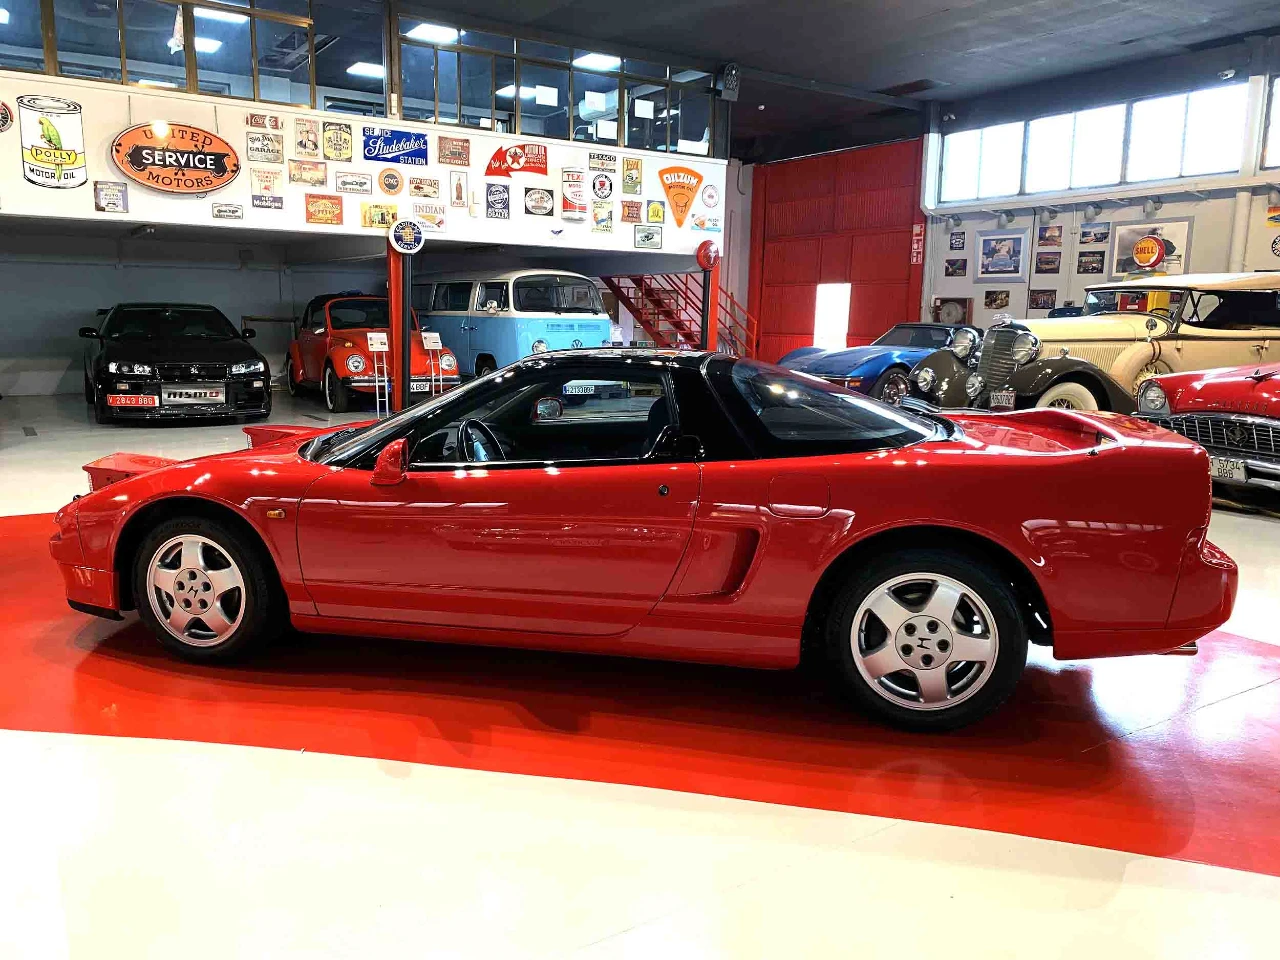 honda-nsx-segunda-mano-1991-rojo-en-venta-comprar-coche-clasico-jjdluxe-garage-ibi-alicante-2